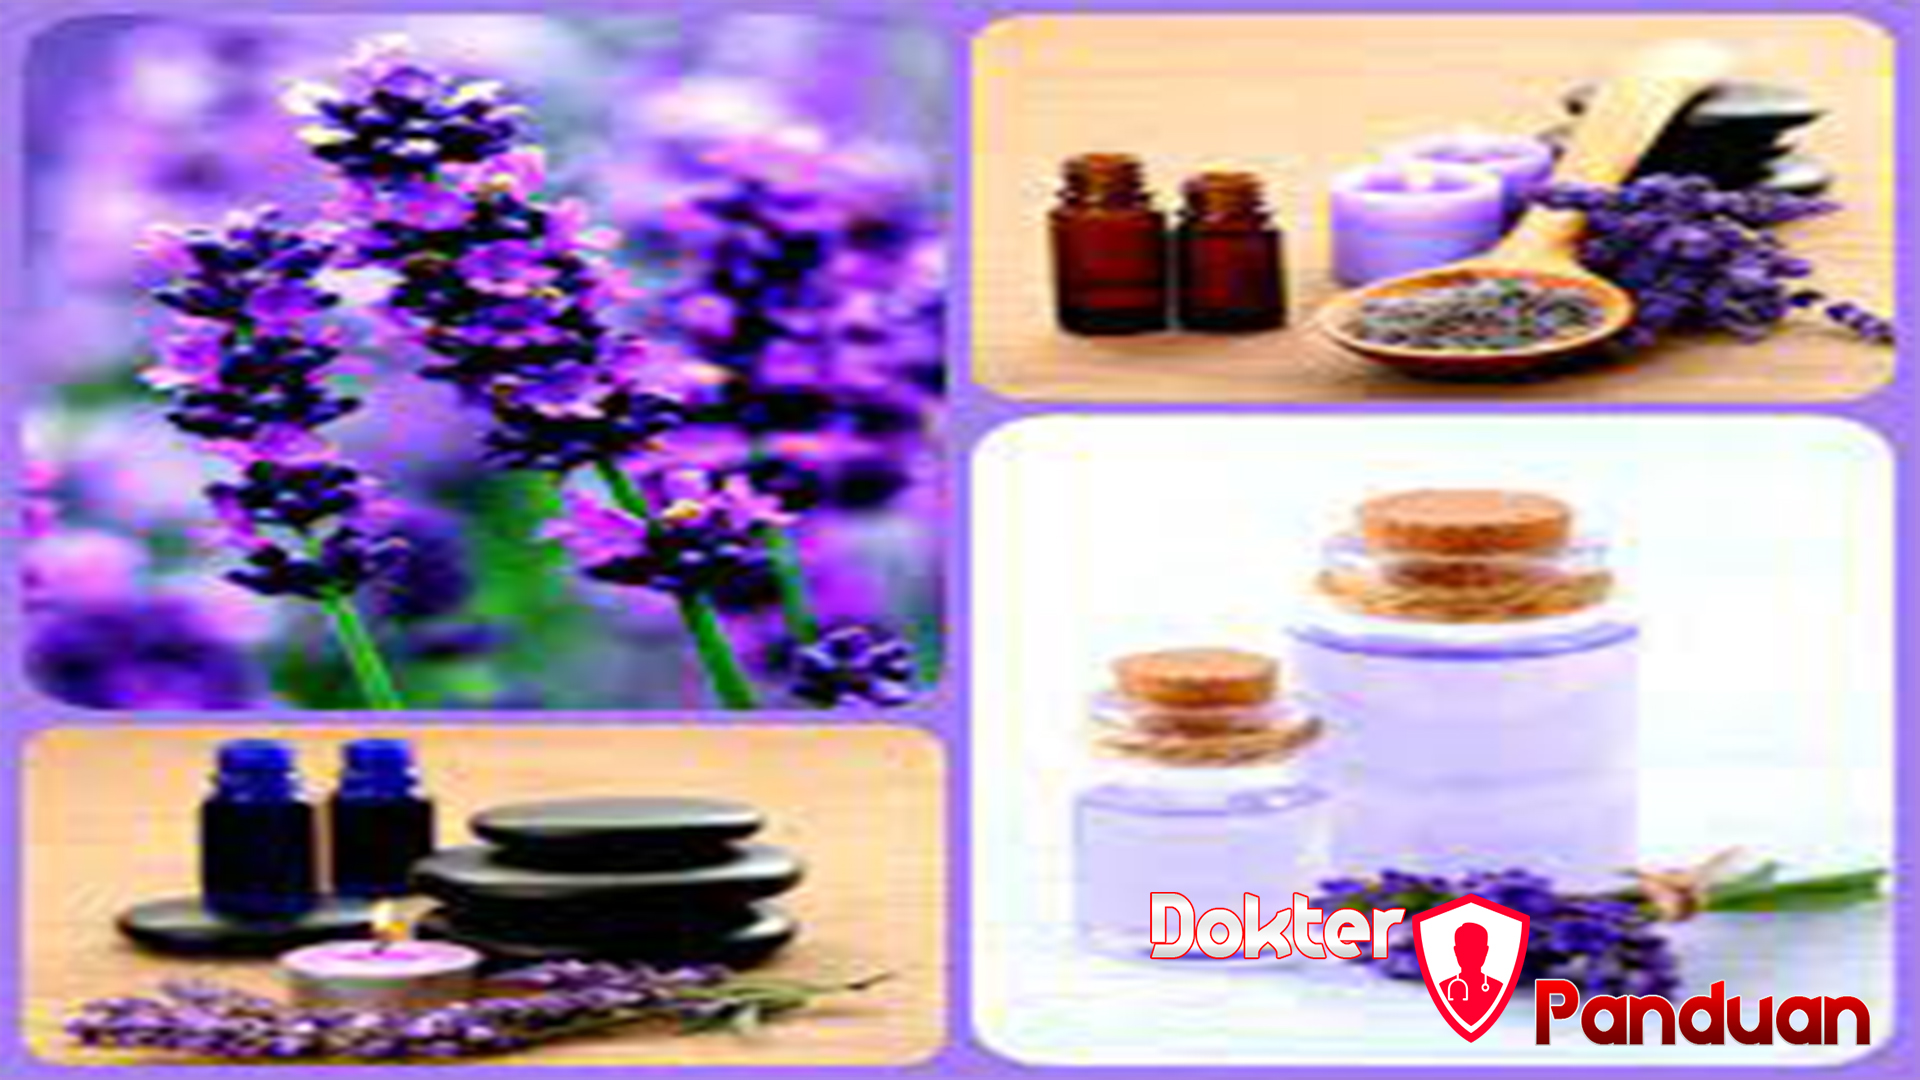 9 Manfaat Bunga Lavender yang Jarang Diketahui